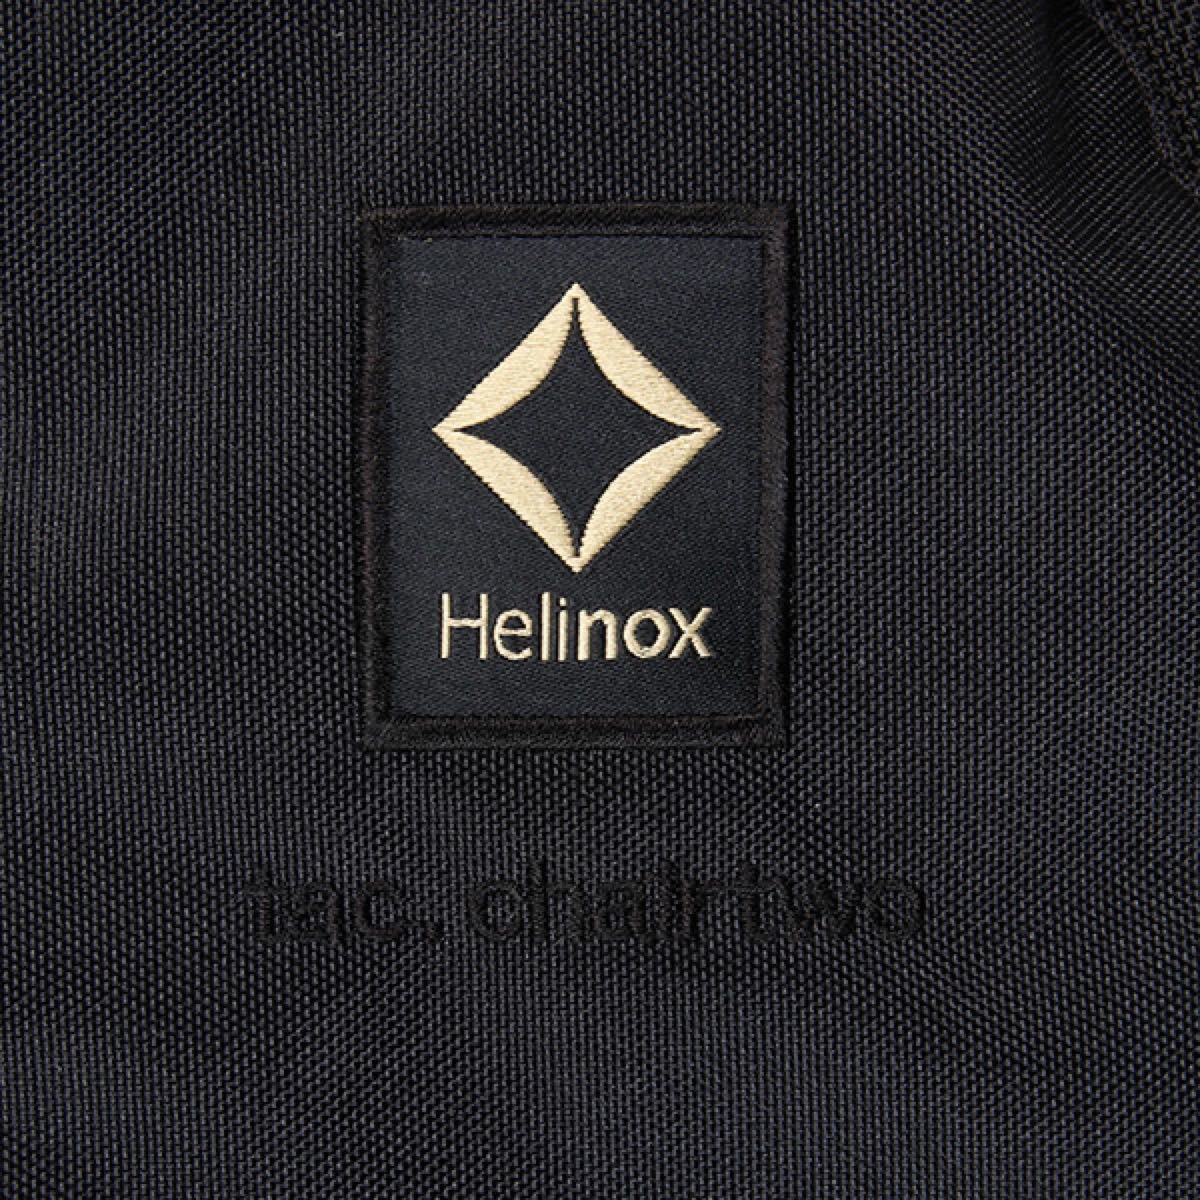 【新品未開封】Helinox ヘリノックス タクティカル チェアツー ブラック